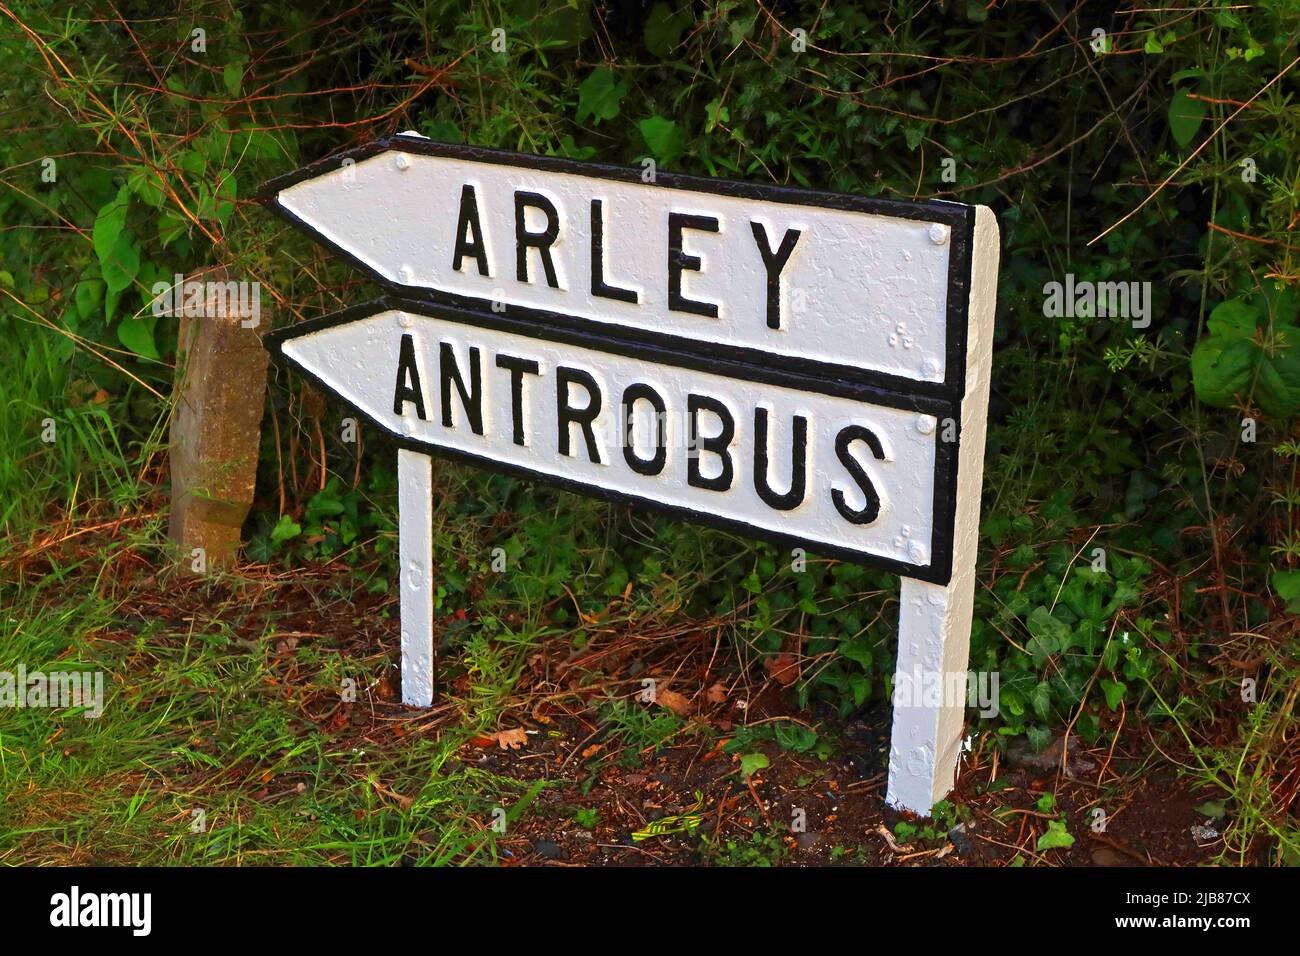 Vieux panneaux routiers à Arley et Antrobus, , Appleton Thorn, Warrington, Cheshire, Angleterre, Royaume-Uni Banque D'Images